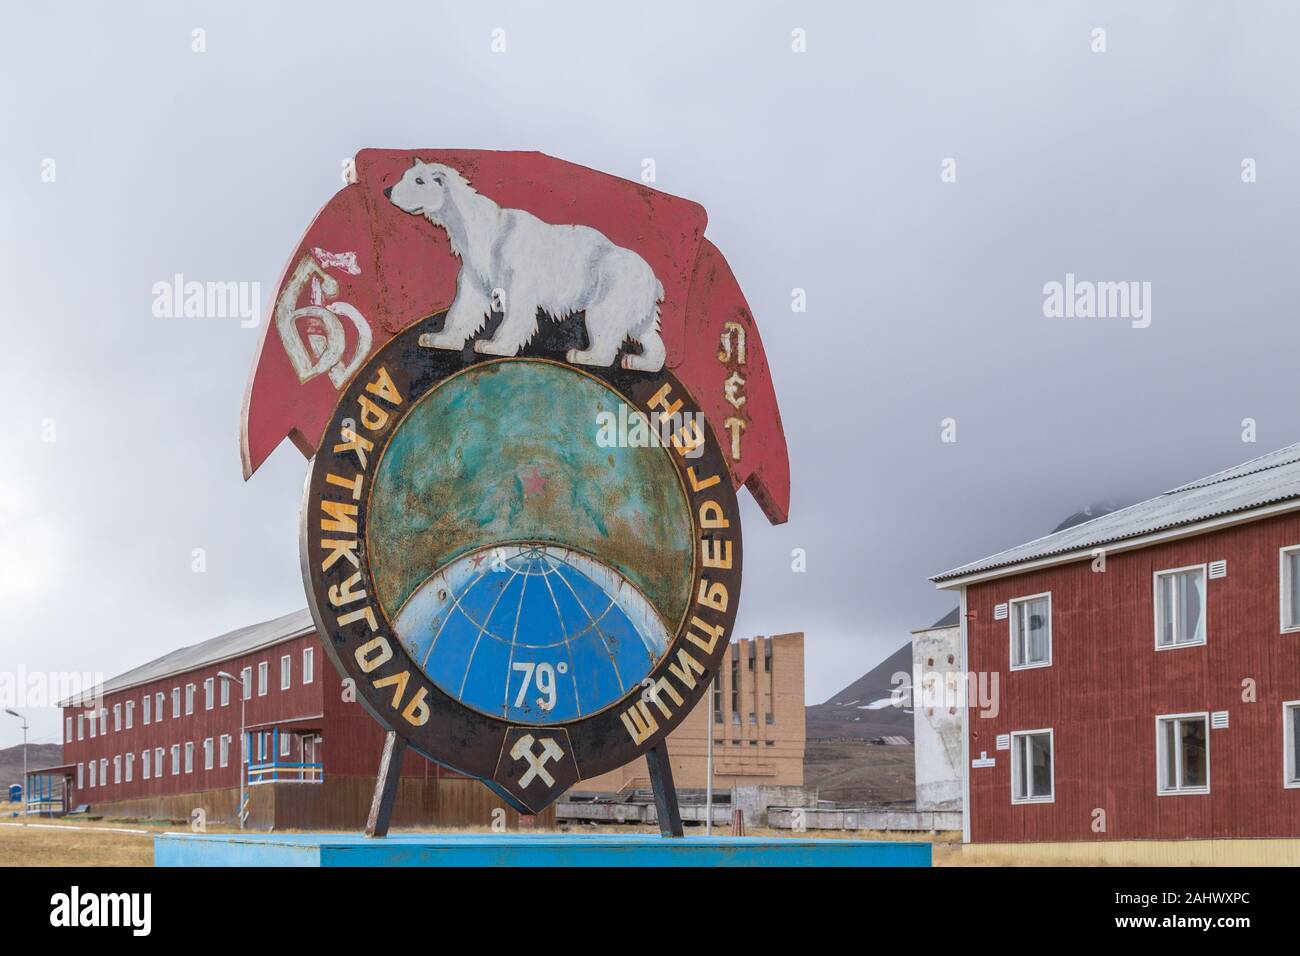 Pyramiden, une fédération de l'extraction du charbon sur le règlement sur le Spitzberg, archipel norvégien de Svalbard dans l'Arctique, a été fermée en 1998 Banque D'Images